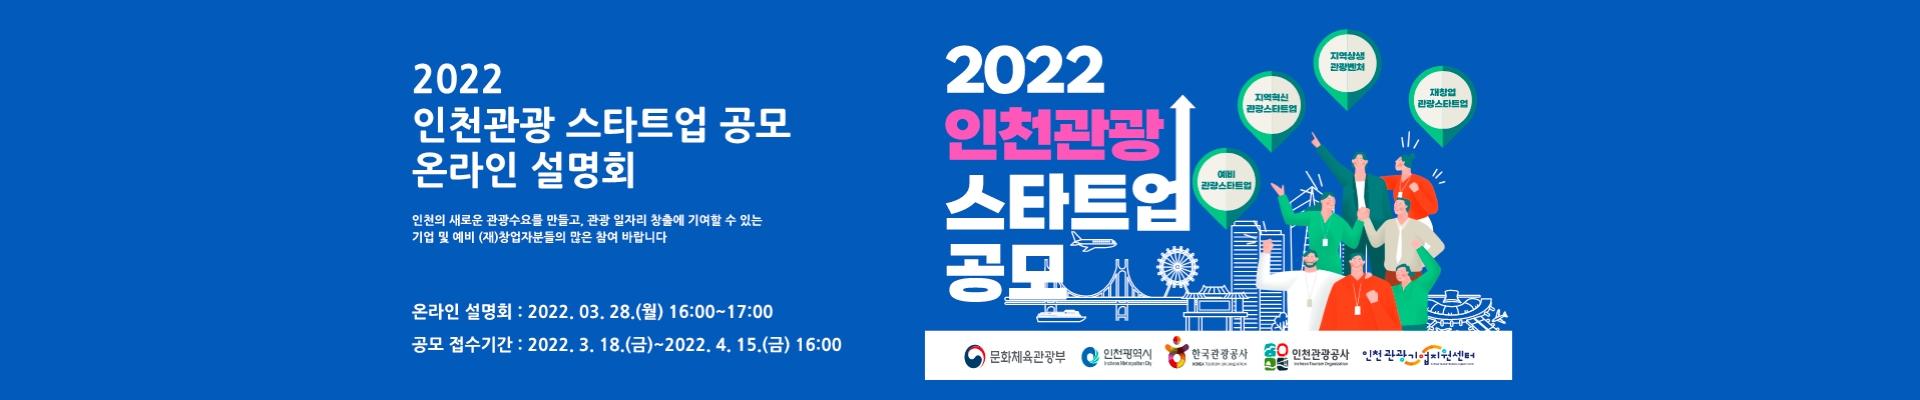 2022년 인천관광 스타트업 공모 온라인 설명회 